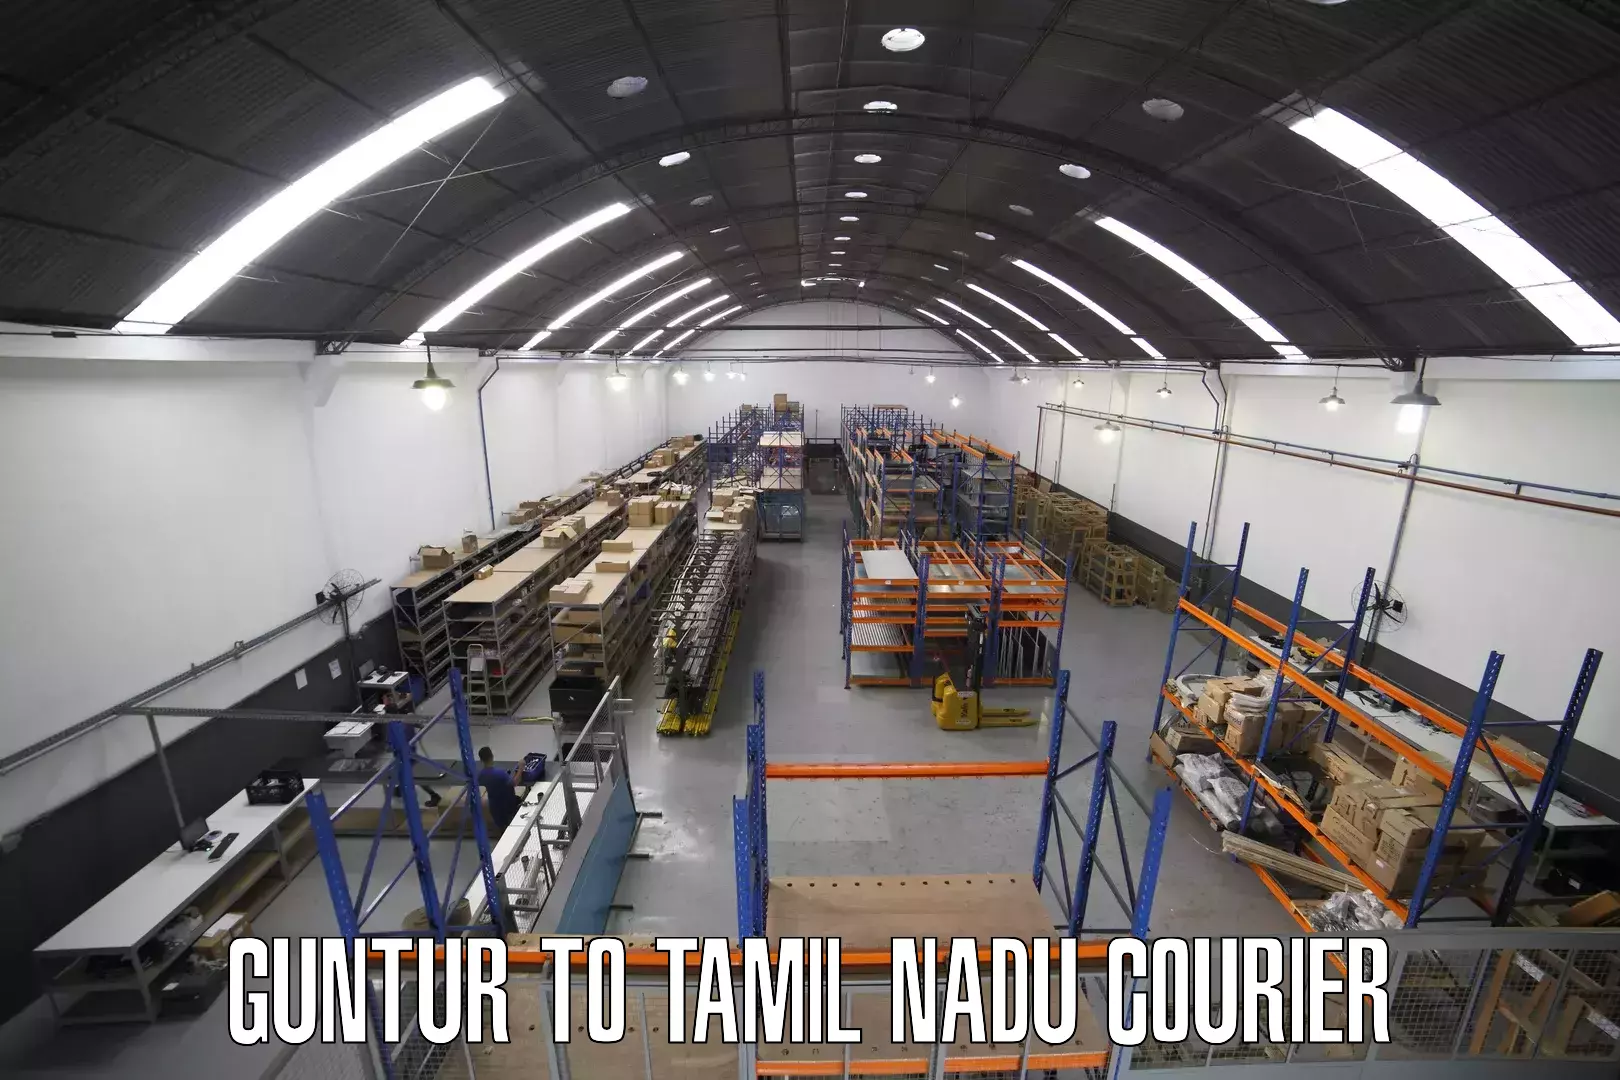 Cargo courier service Guntur to Tamil Nadu